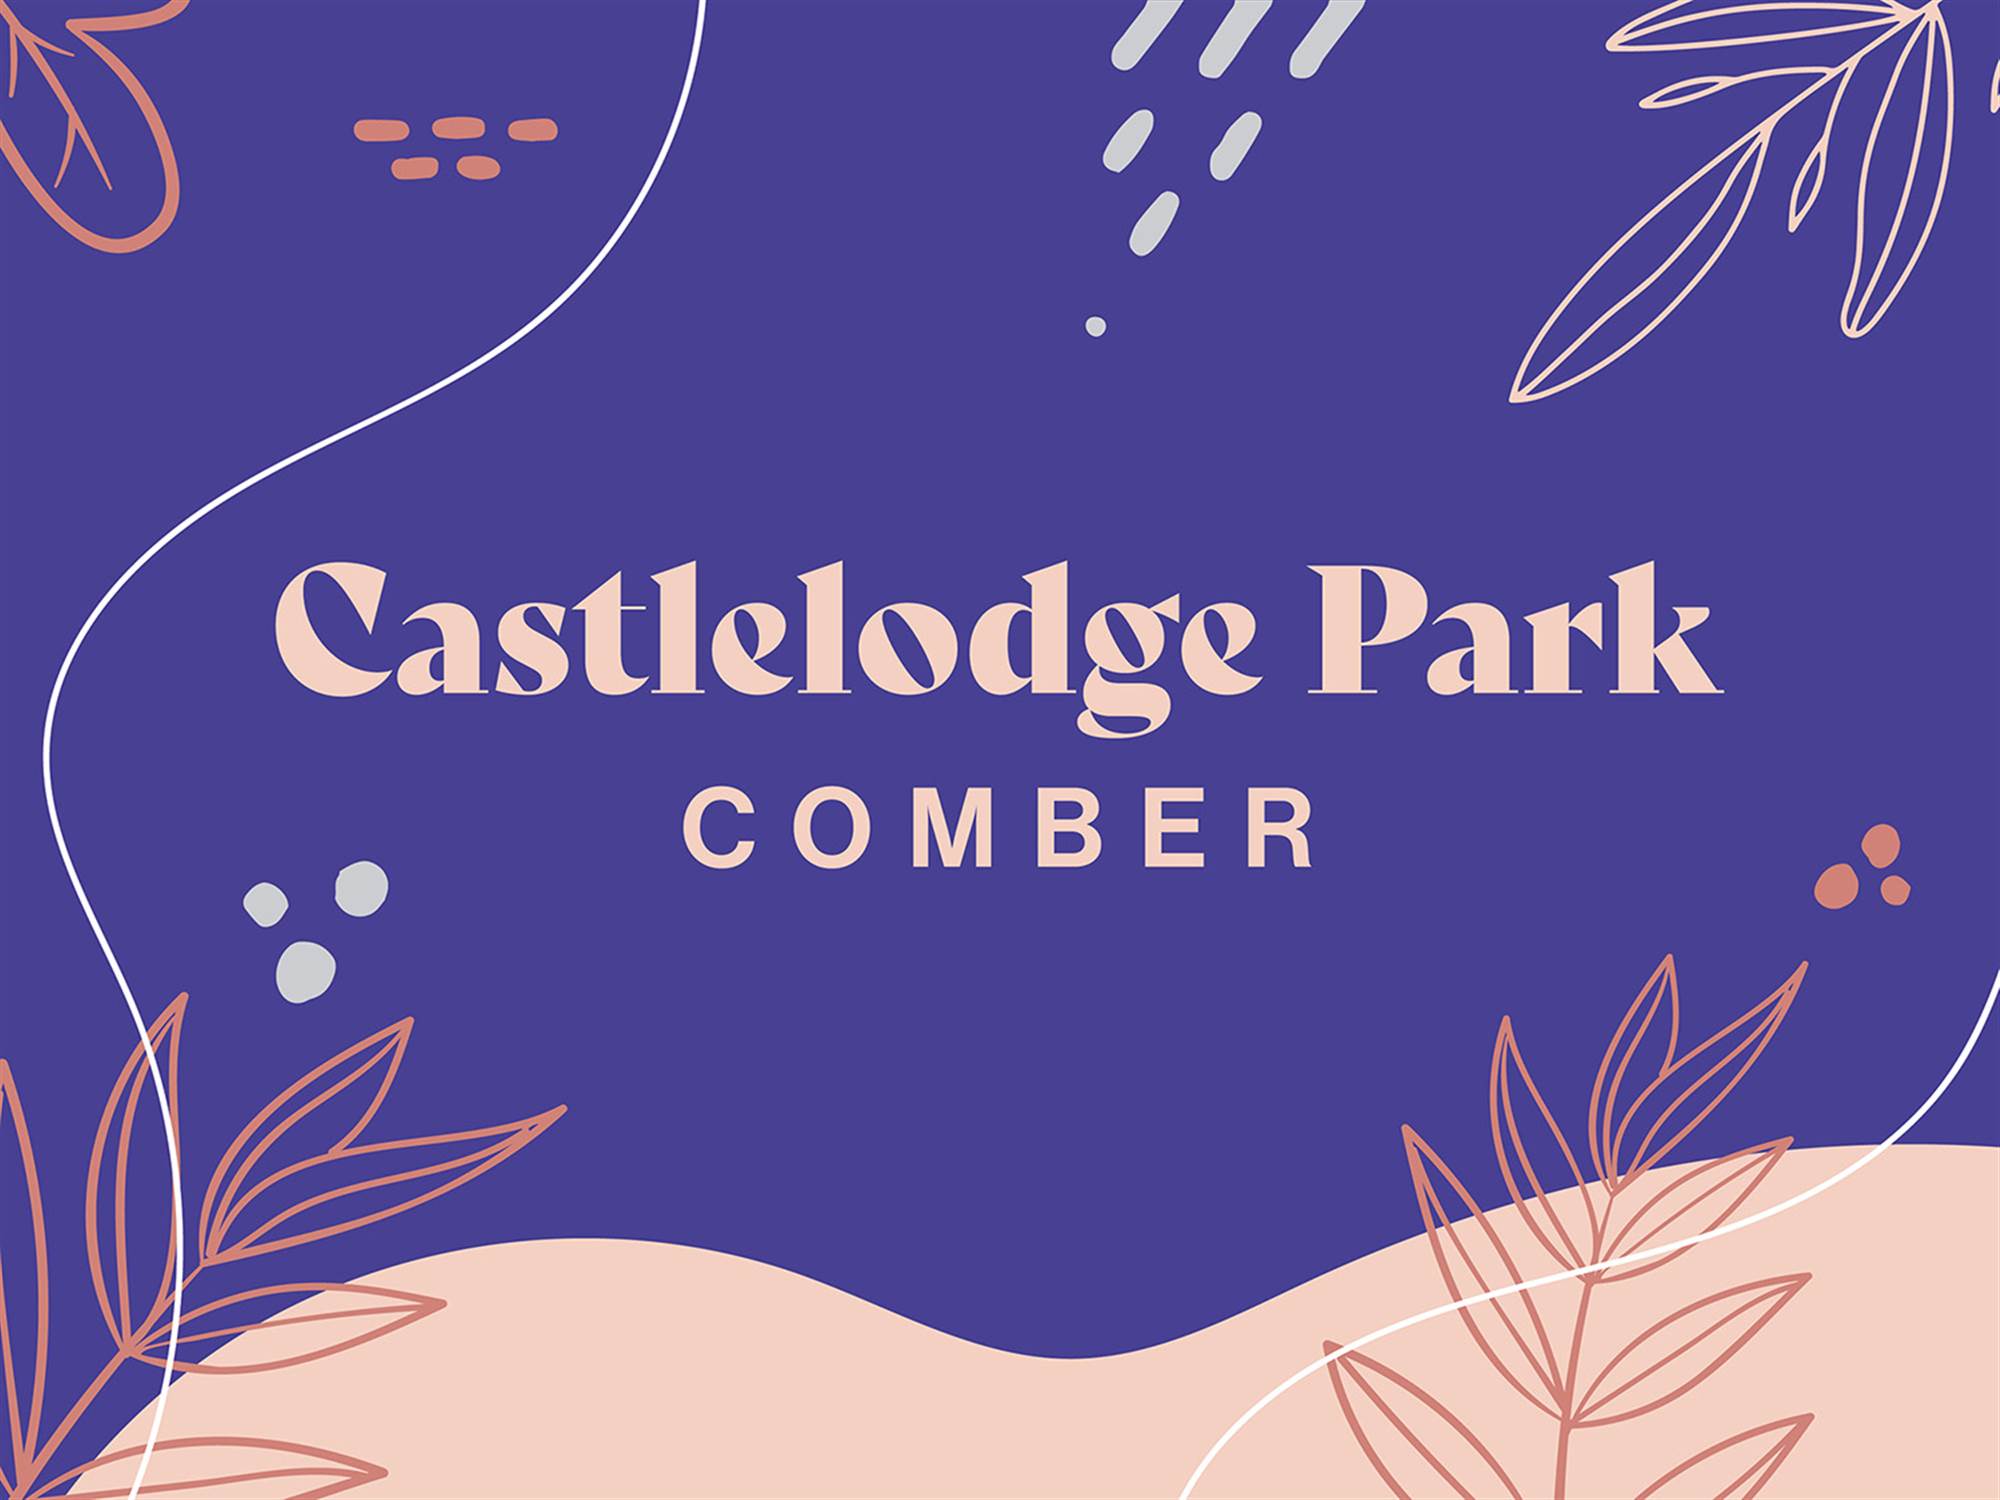 Castlelodge Park, Comber